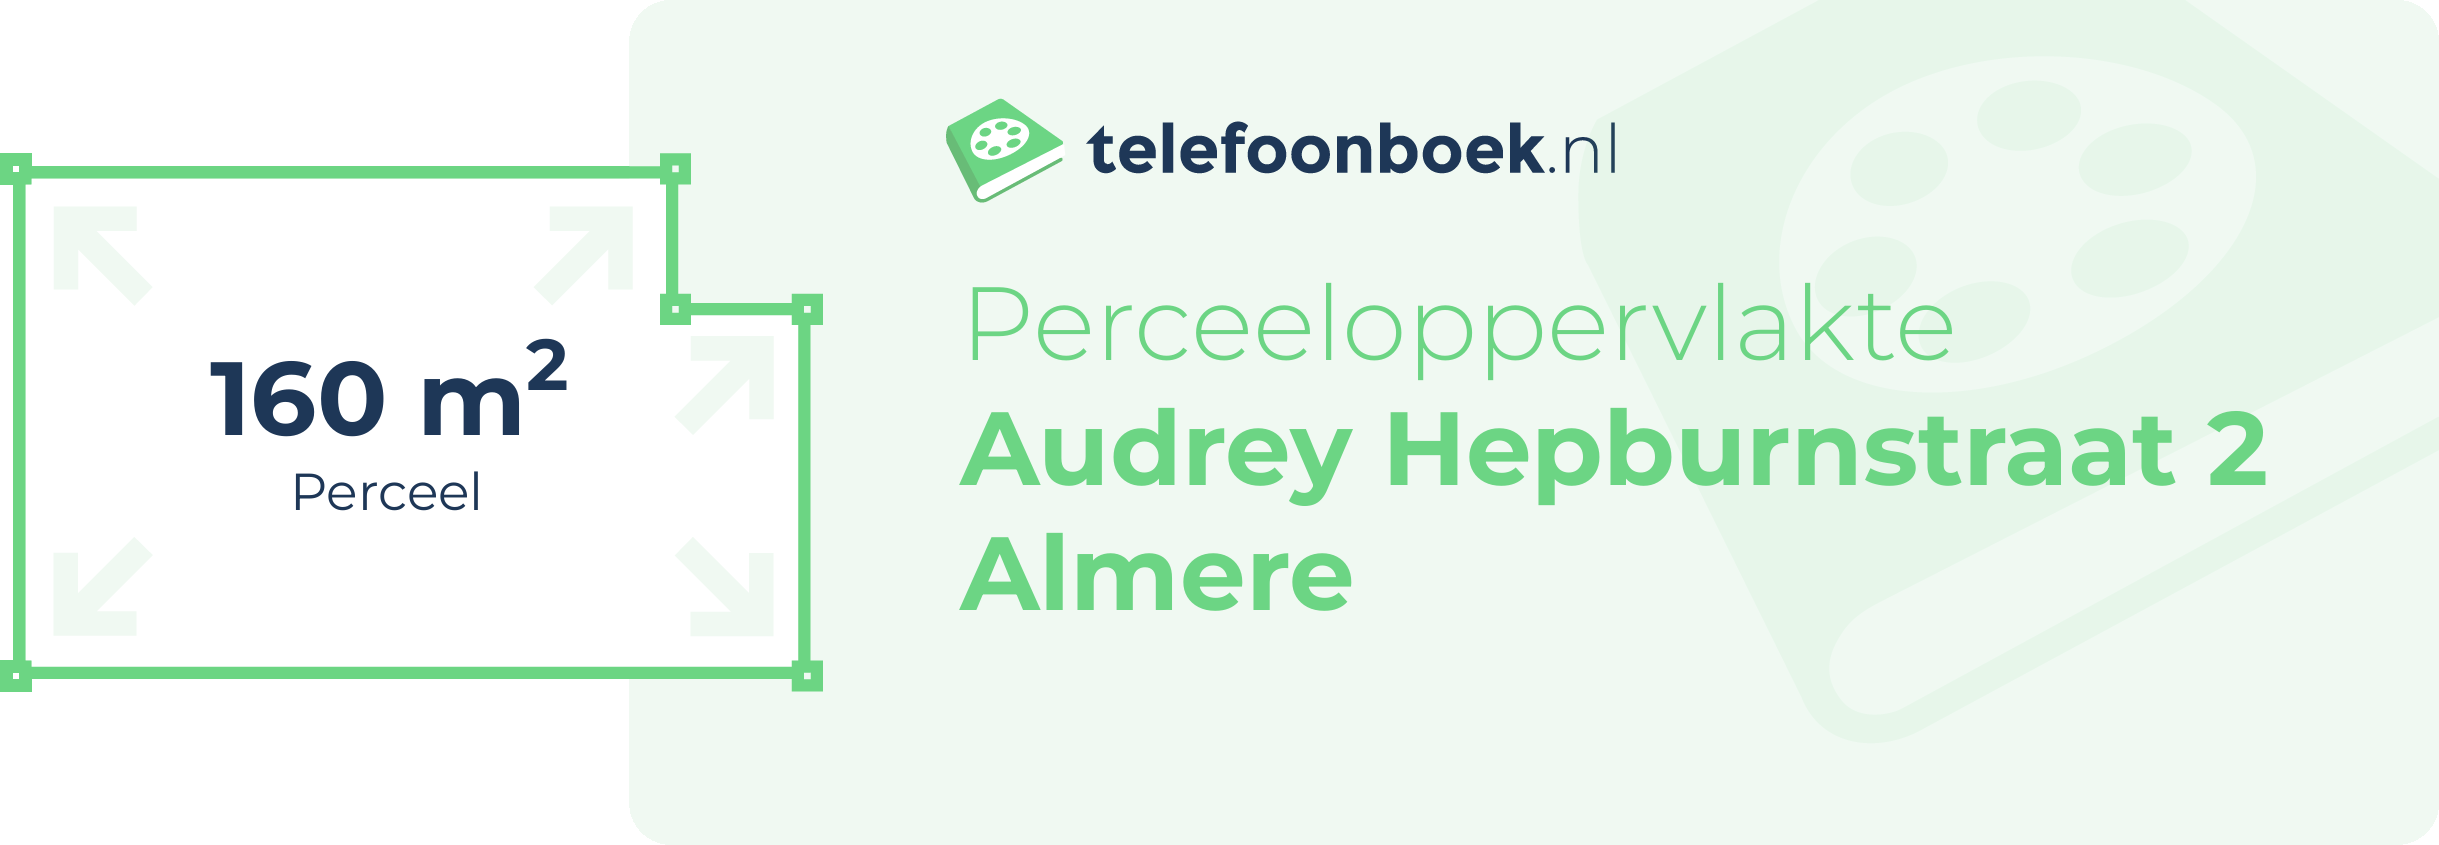 Perceeloppervlakte Audrey Hepburnstraat 2 Almere